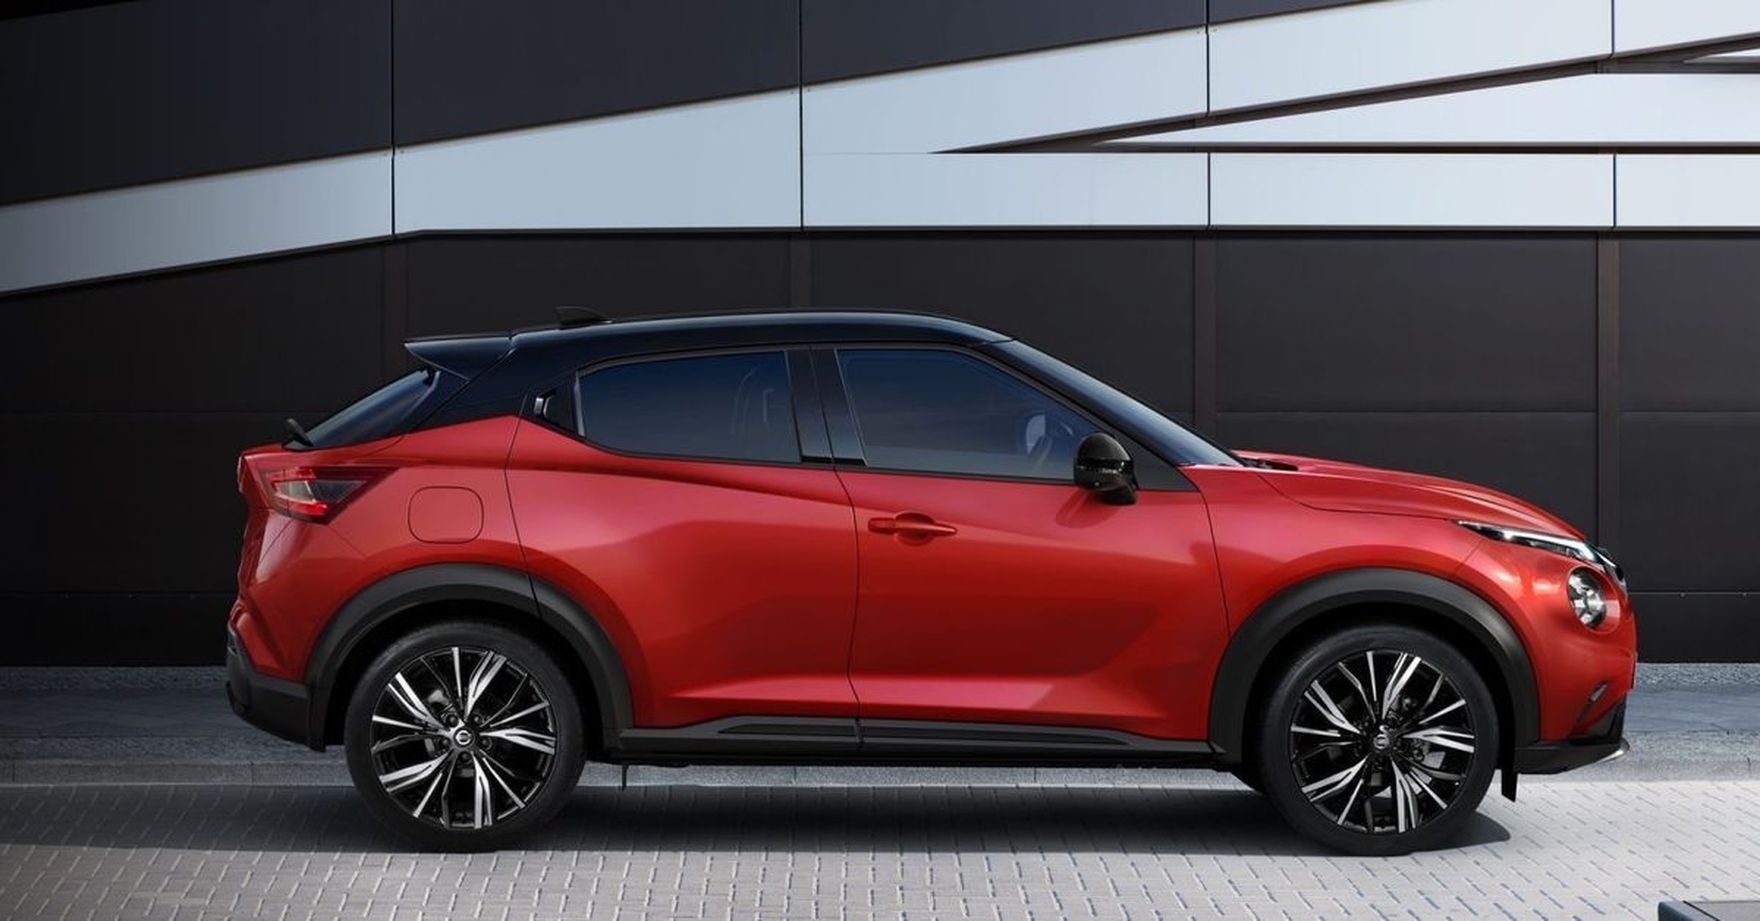 Nissan Juke kusi wnętrzem i ceną.  Czego możemy się spodziewać po drugiej generacji tego modelu?